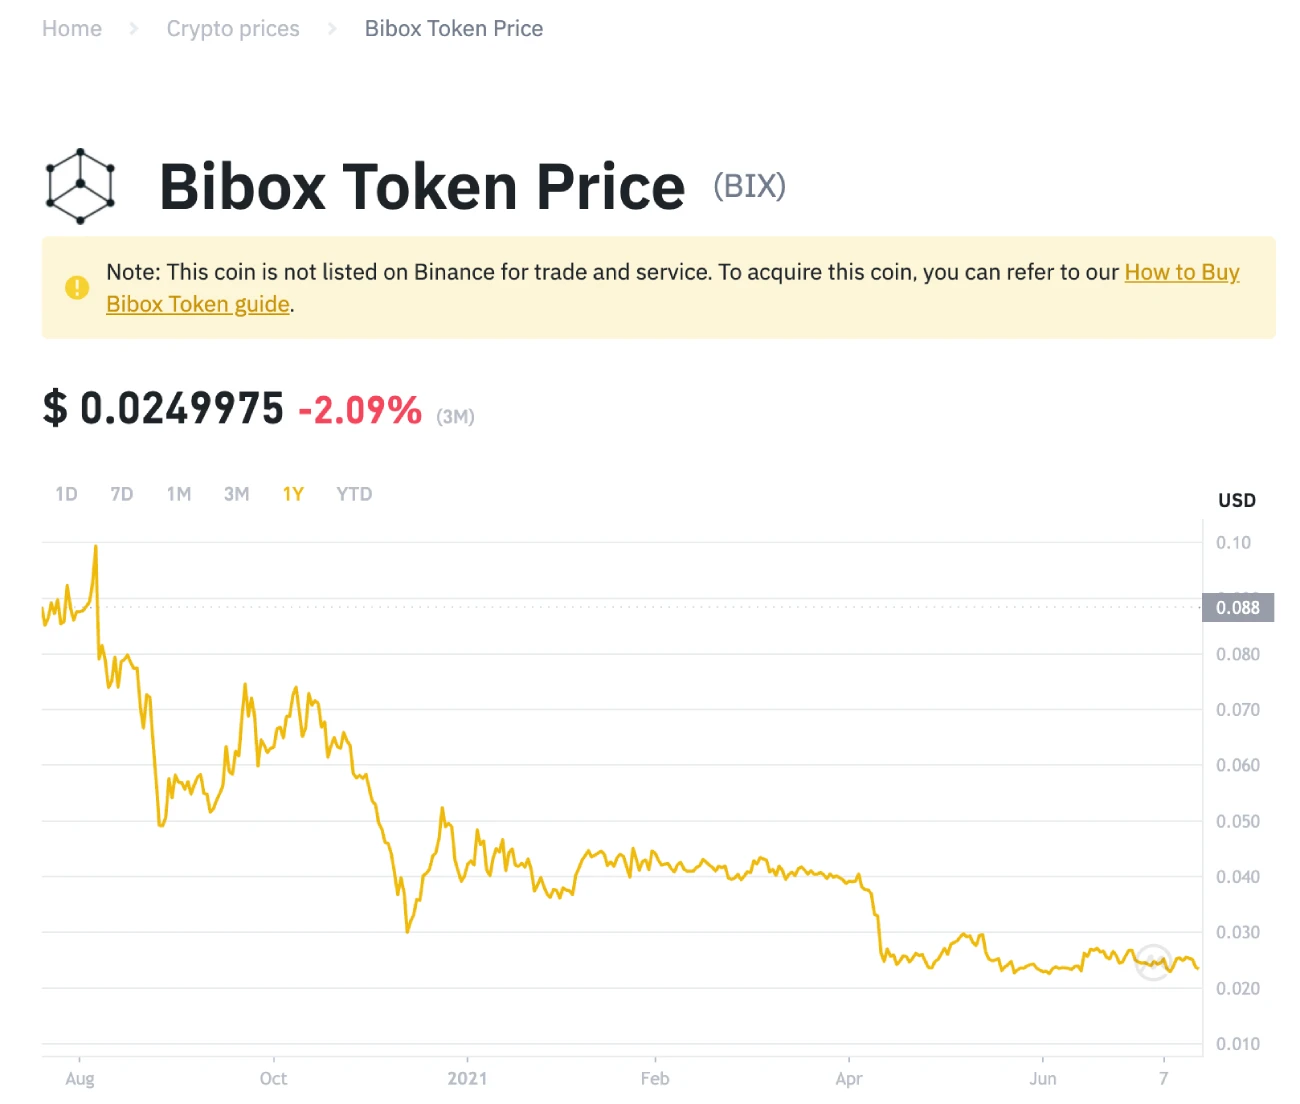 Bibox token price on Binance